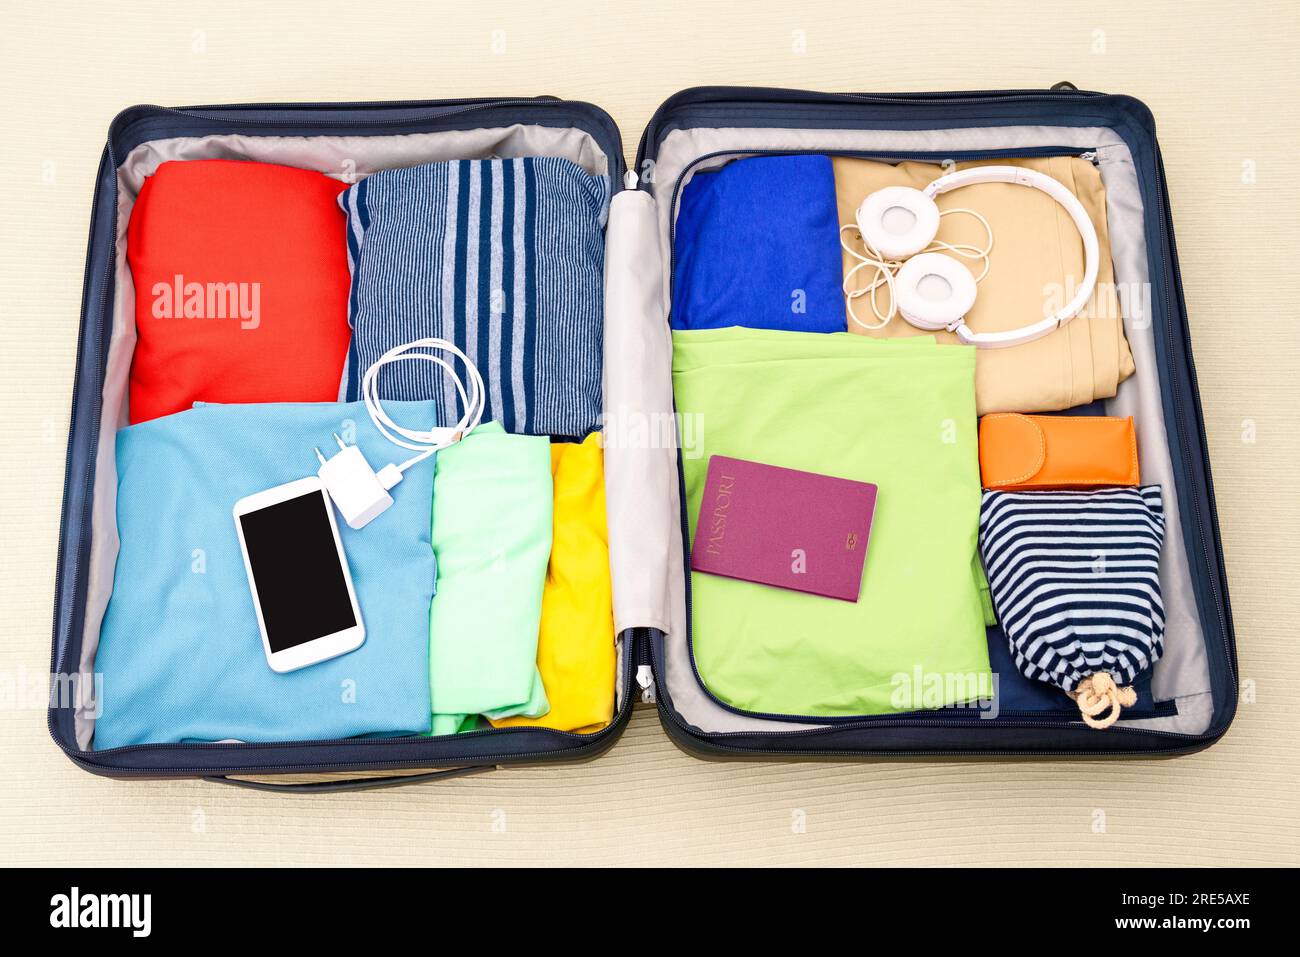 Voir le formulaire ci-dessus d'une valise ouverte emballée avec des vêtements, des accessoires et un passeport sur un lit. Concept de voyage. Banque D'Images